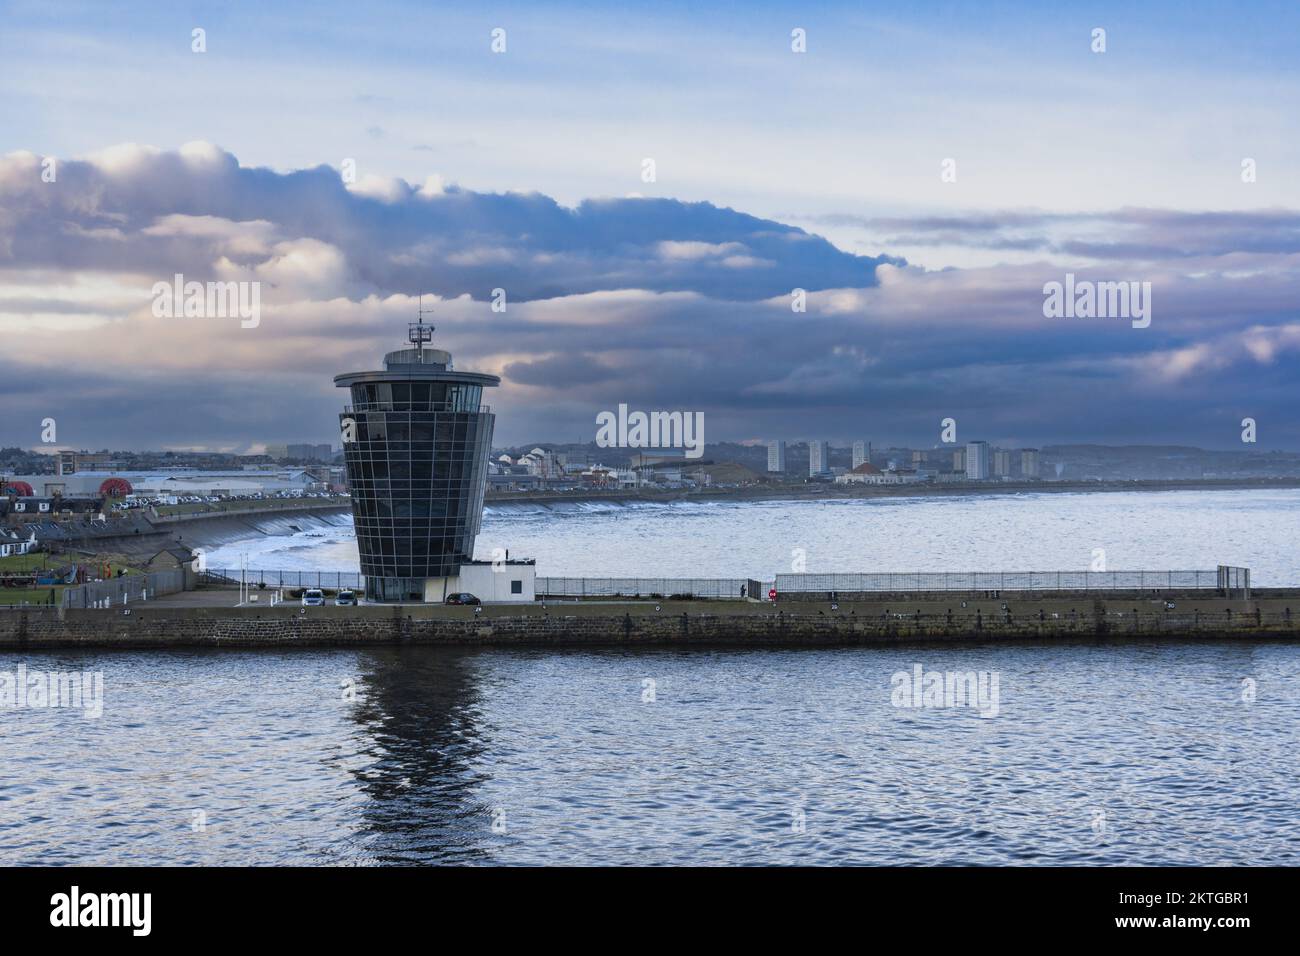 Hafen von Aberdeen, Schottland. Ein geschäftiger Hafen für die Ölindustrie. Der VTS-Turm hat einen Architektenpreis gewonnen, als er neu war. Stockfoto